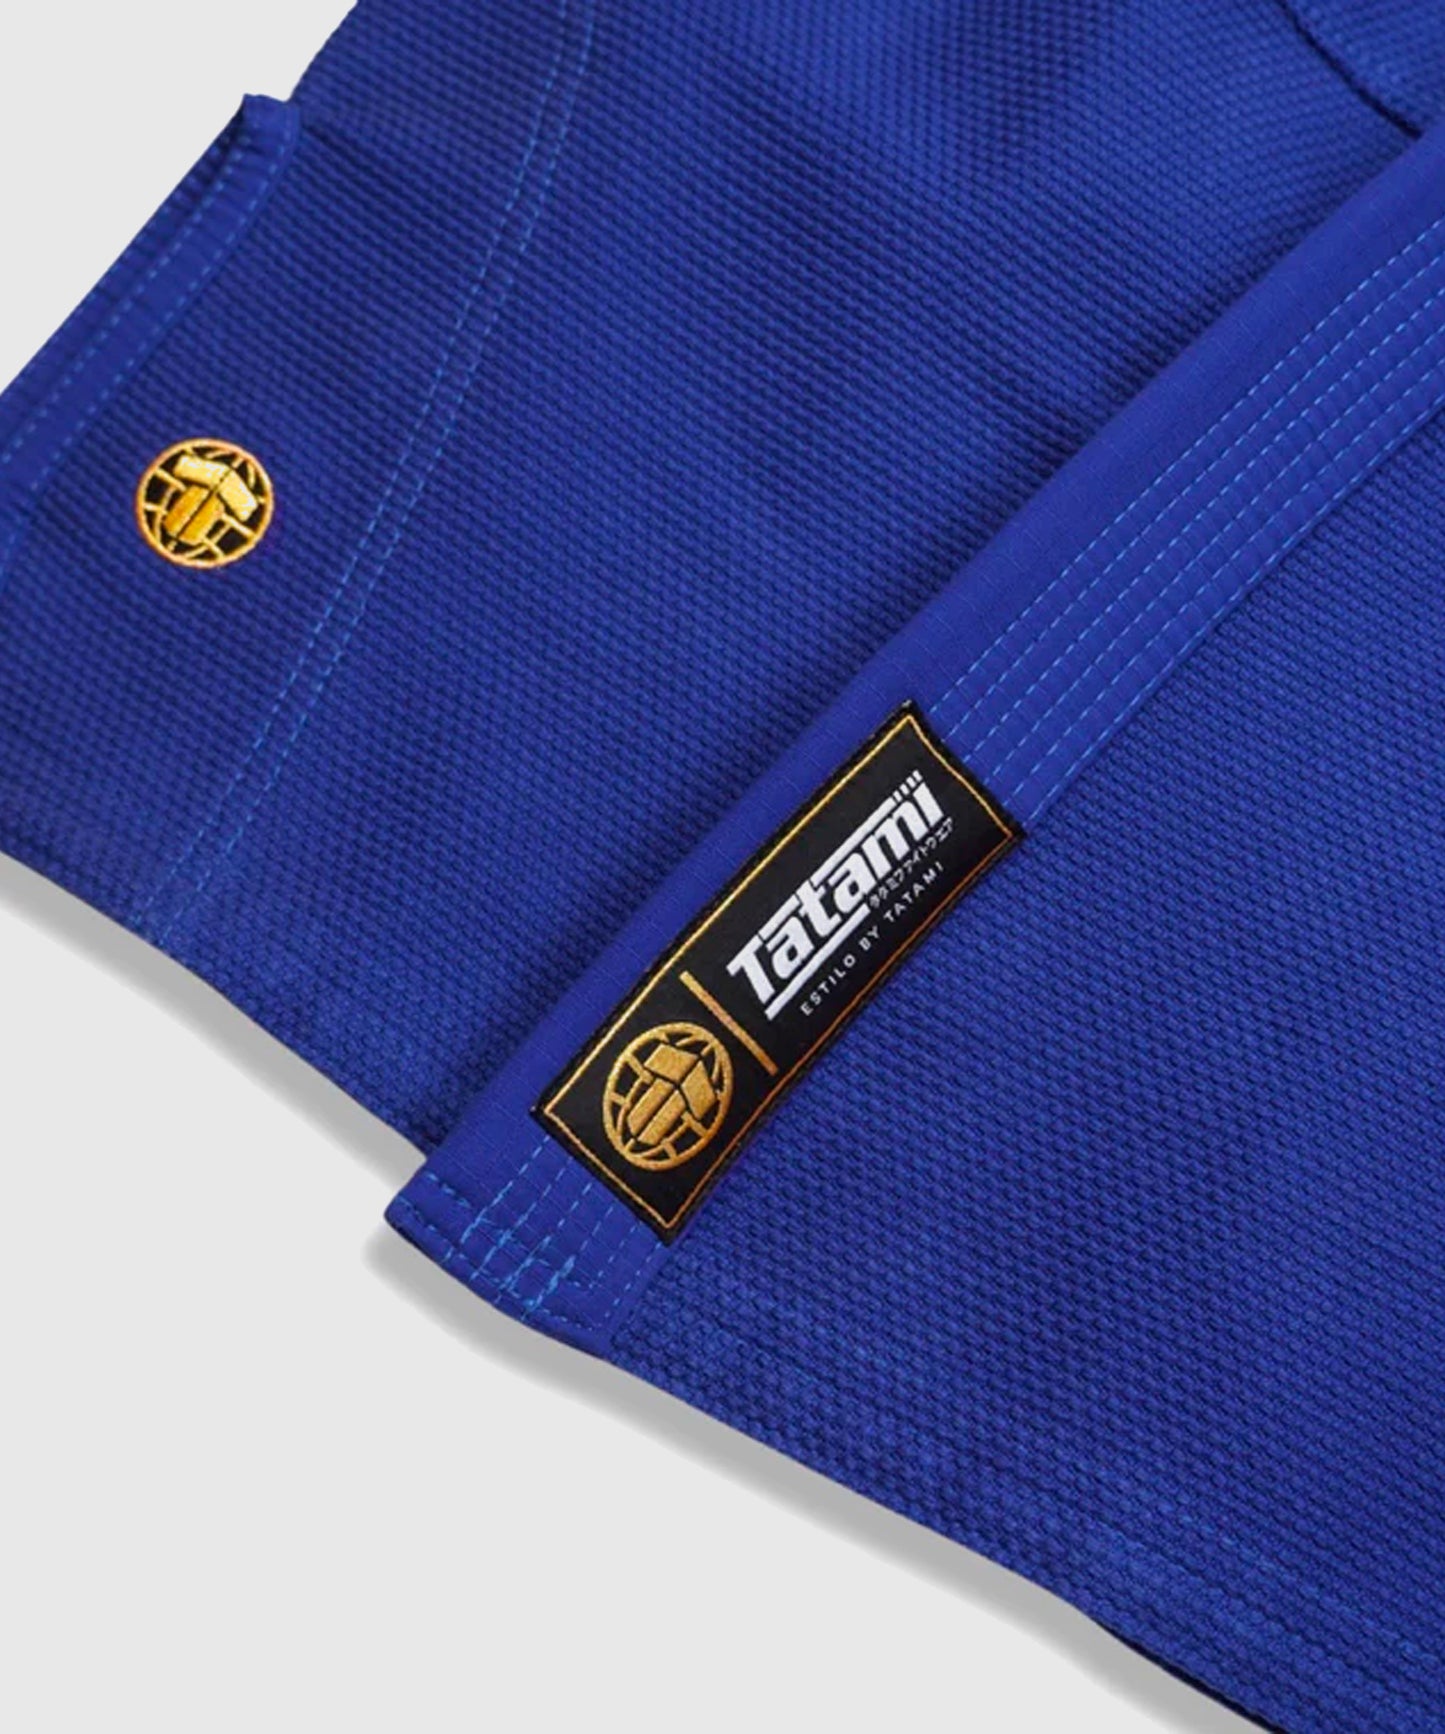 Kimono De Jjb Tatami Fightwear Estilo Gold Label - Bleu